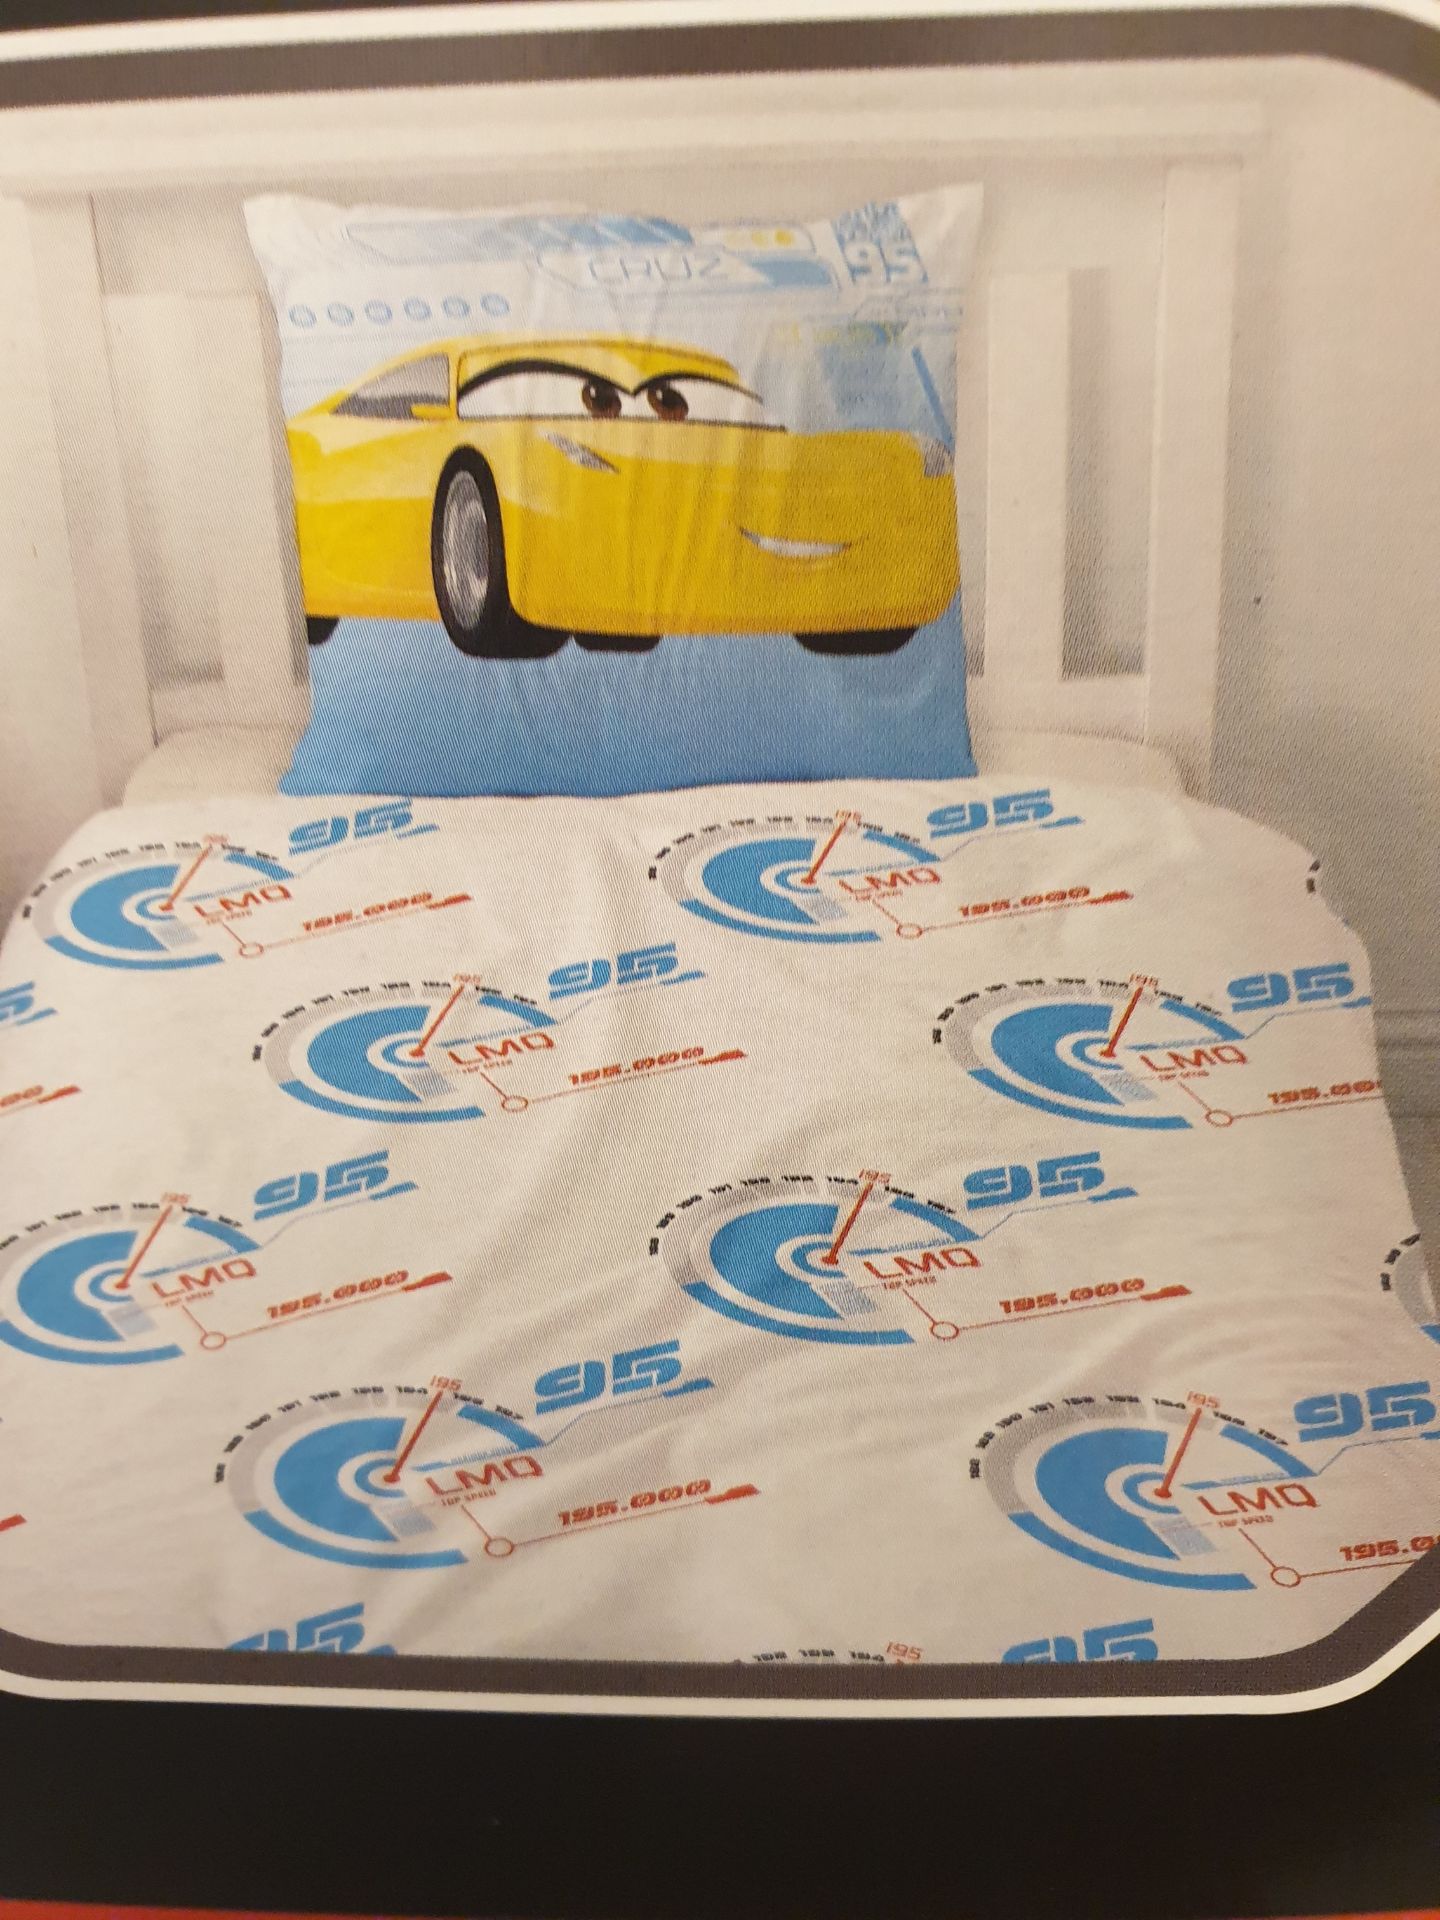 V Brand New Disney Pixar Cars 3 Single Bed Set - Image 2 of 2